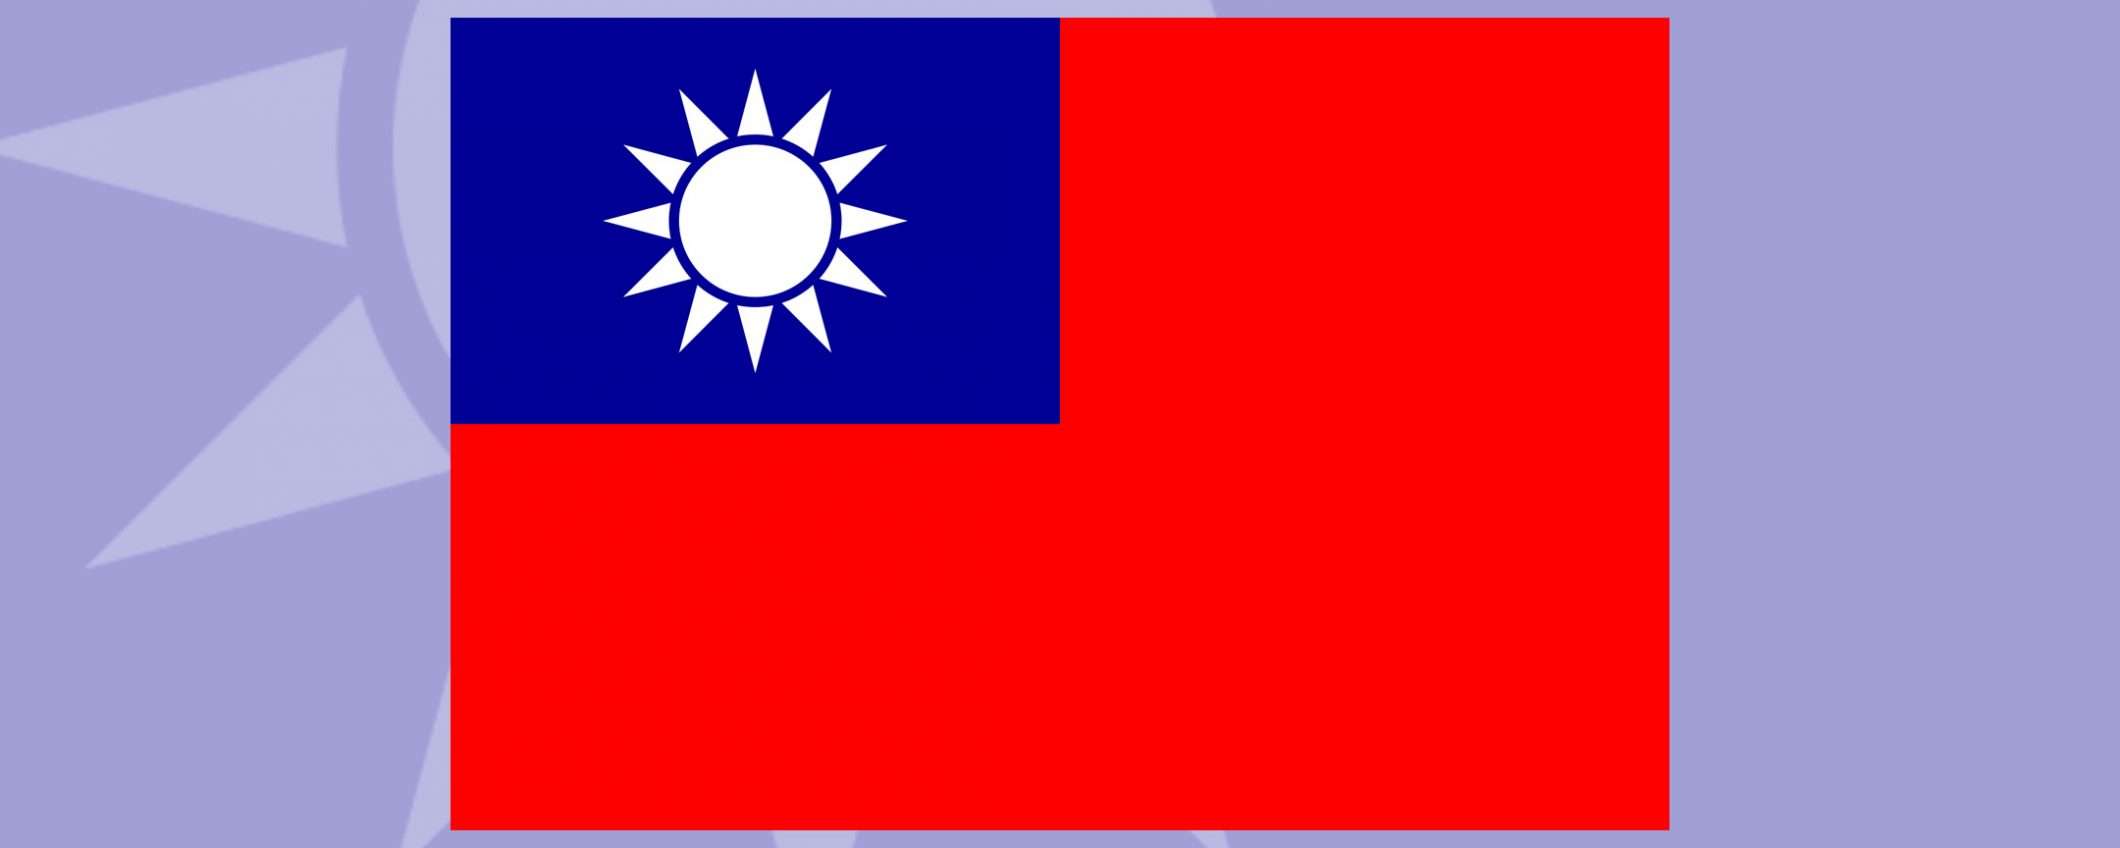 Apple: dov'è finita la bandiera di Taiwan?